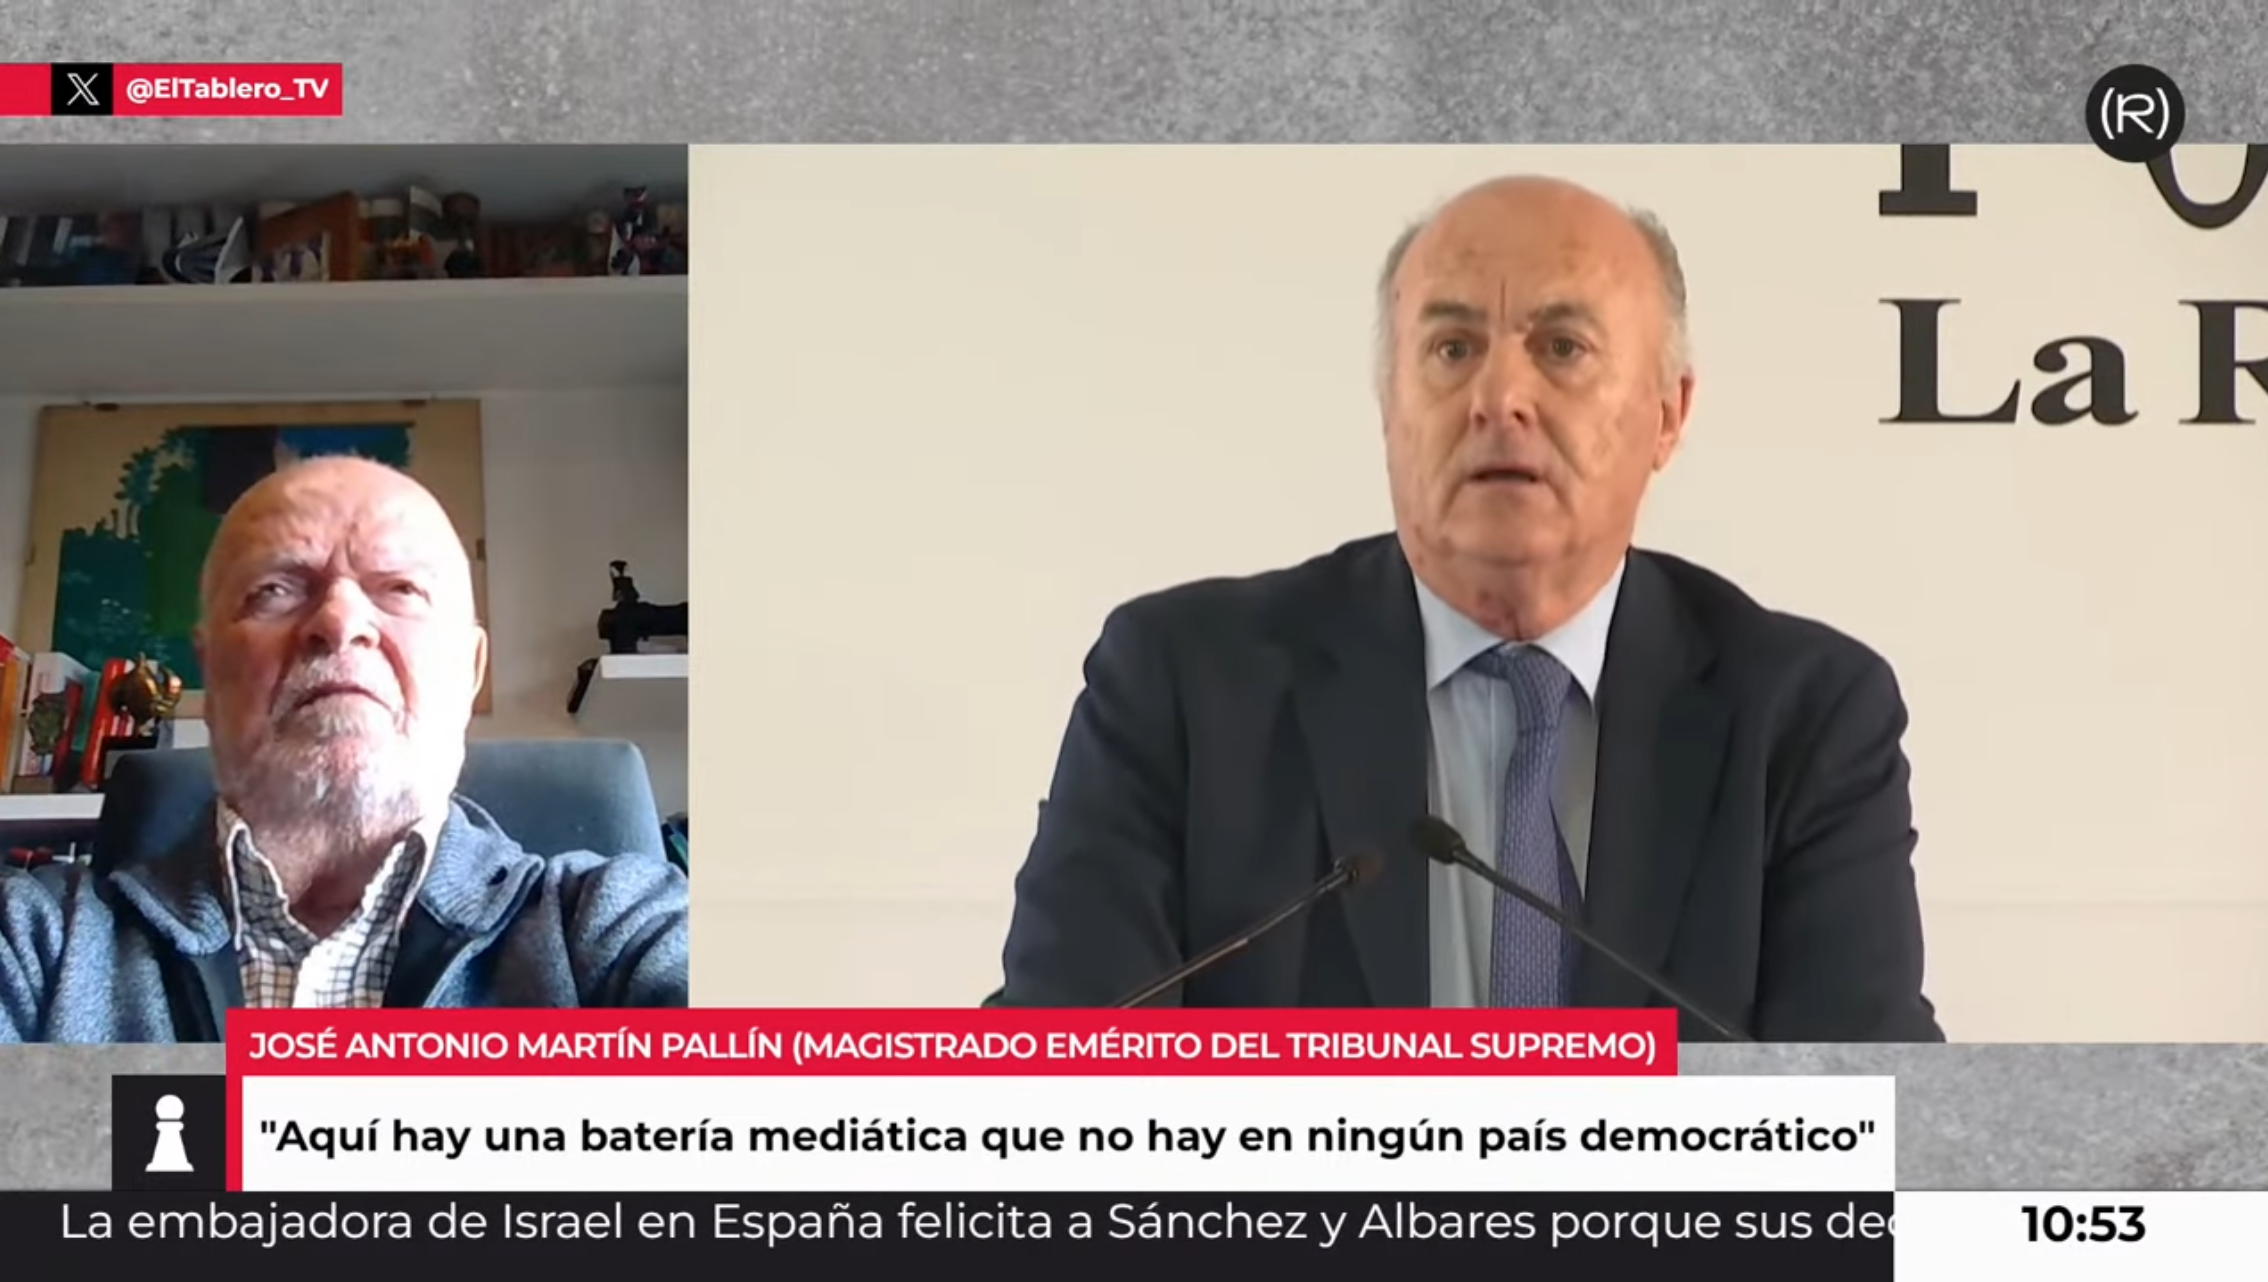 Martín Pallín: “García-Castellón se ha distinguido por su intervencionismo en cualquier cuestión política que pueda perjudicar al Gobierno”